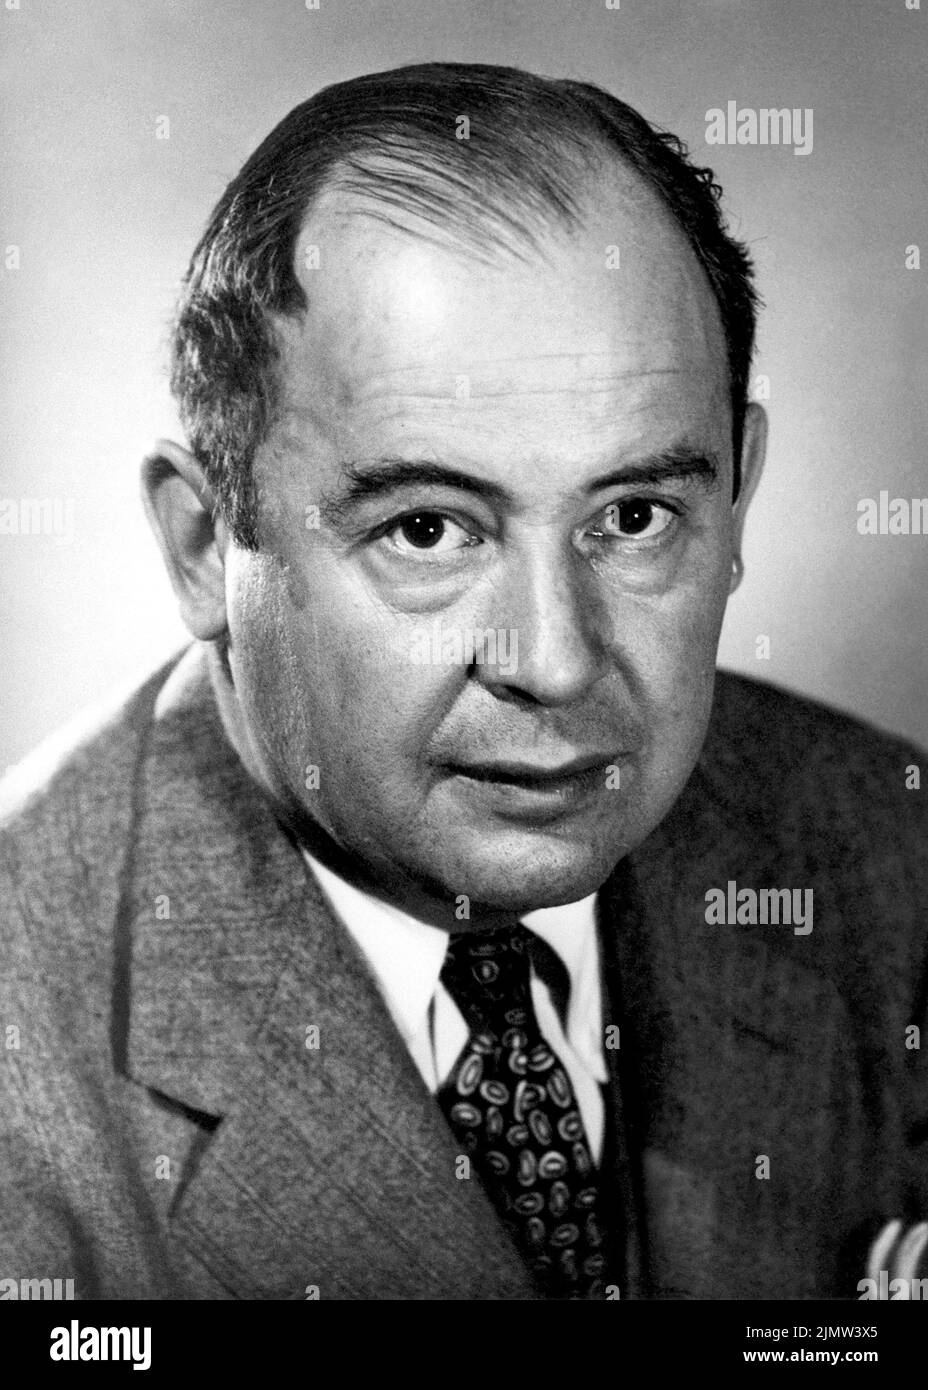 John von Neumann (1903-1957), matematico ungherese-americano, fisico, informatico, ingegnere e polimato. Von Neumann ha contribuito in modo significativo ad un gran numero di aree. Durante la seconda guerra mondiale lavorò al progetto di Manhattan e in seguito divenne commissario della Commissione per l'energia atomica degli Stati Uniti. Foto: 1956. Foto Stock